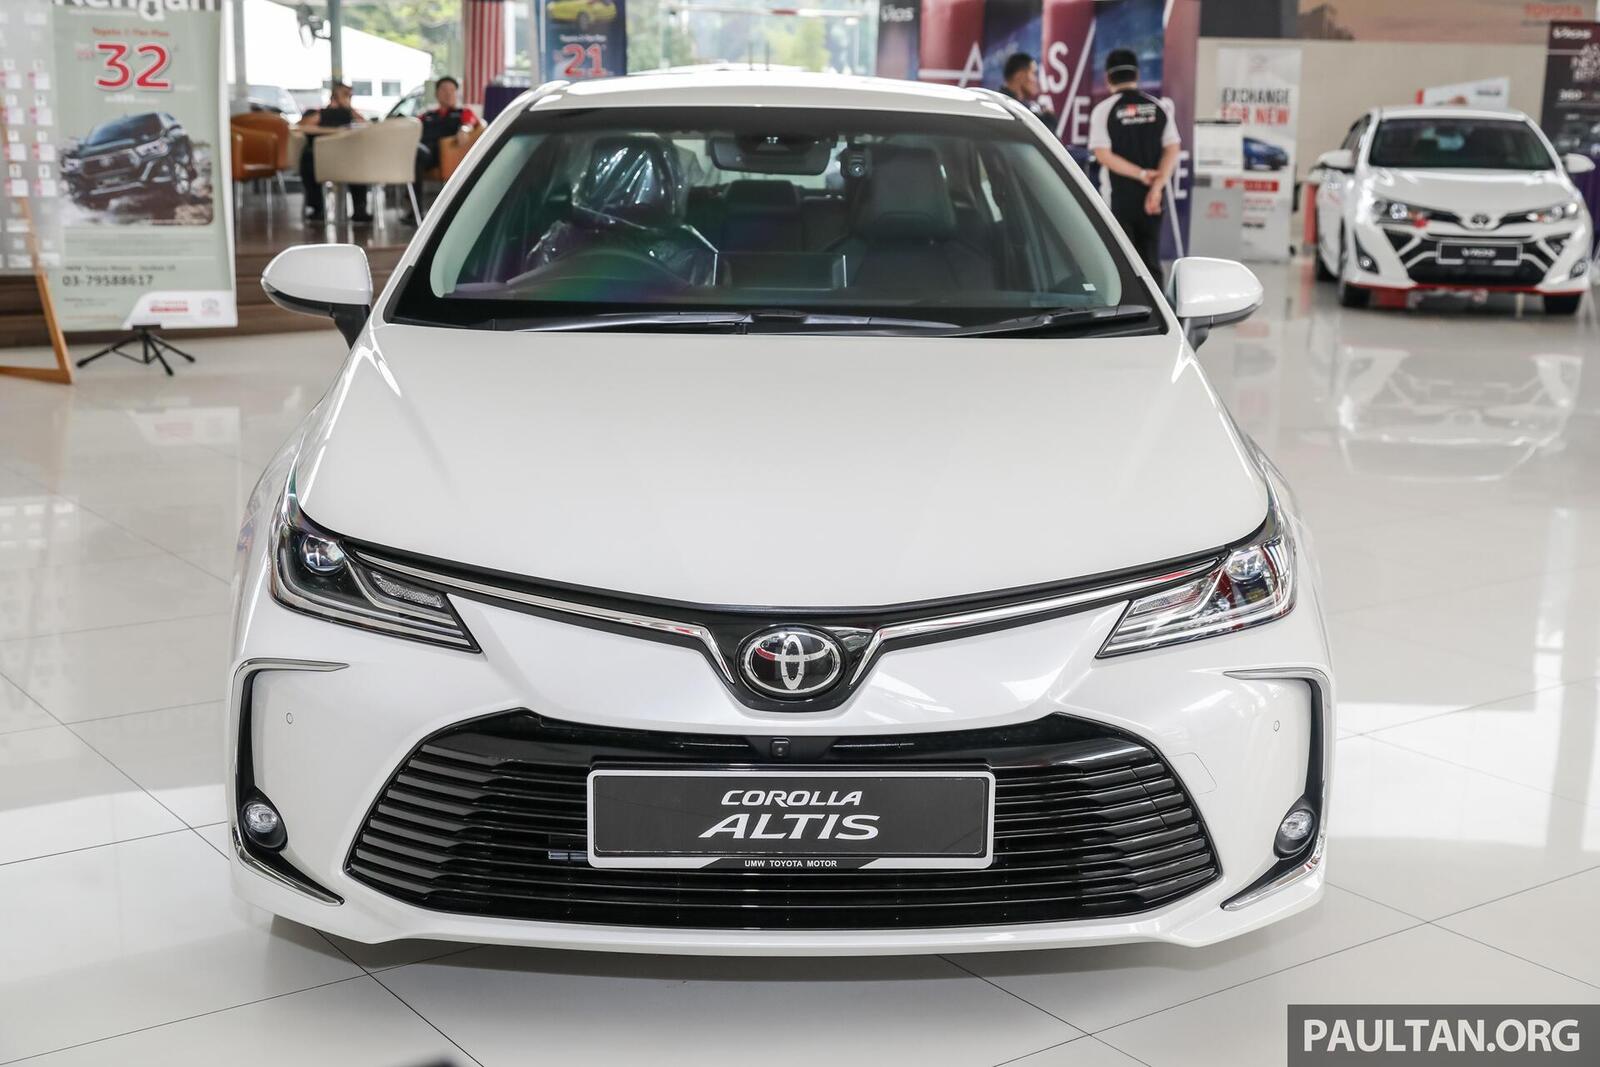 Toyota Corolla Sedan thế hệ mới 2019 chính thức lộ diện